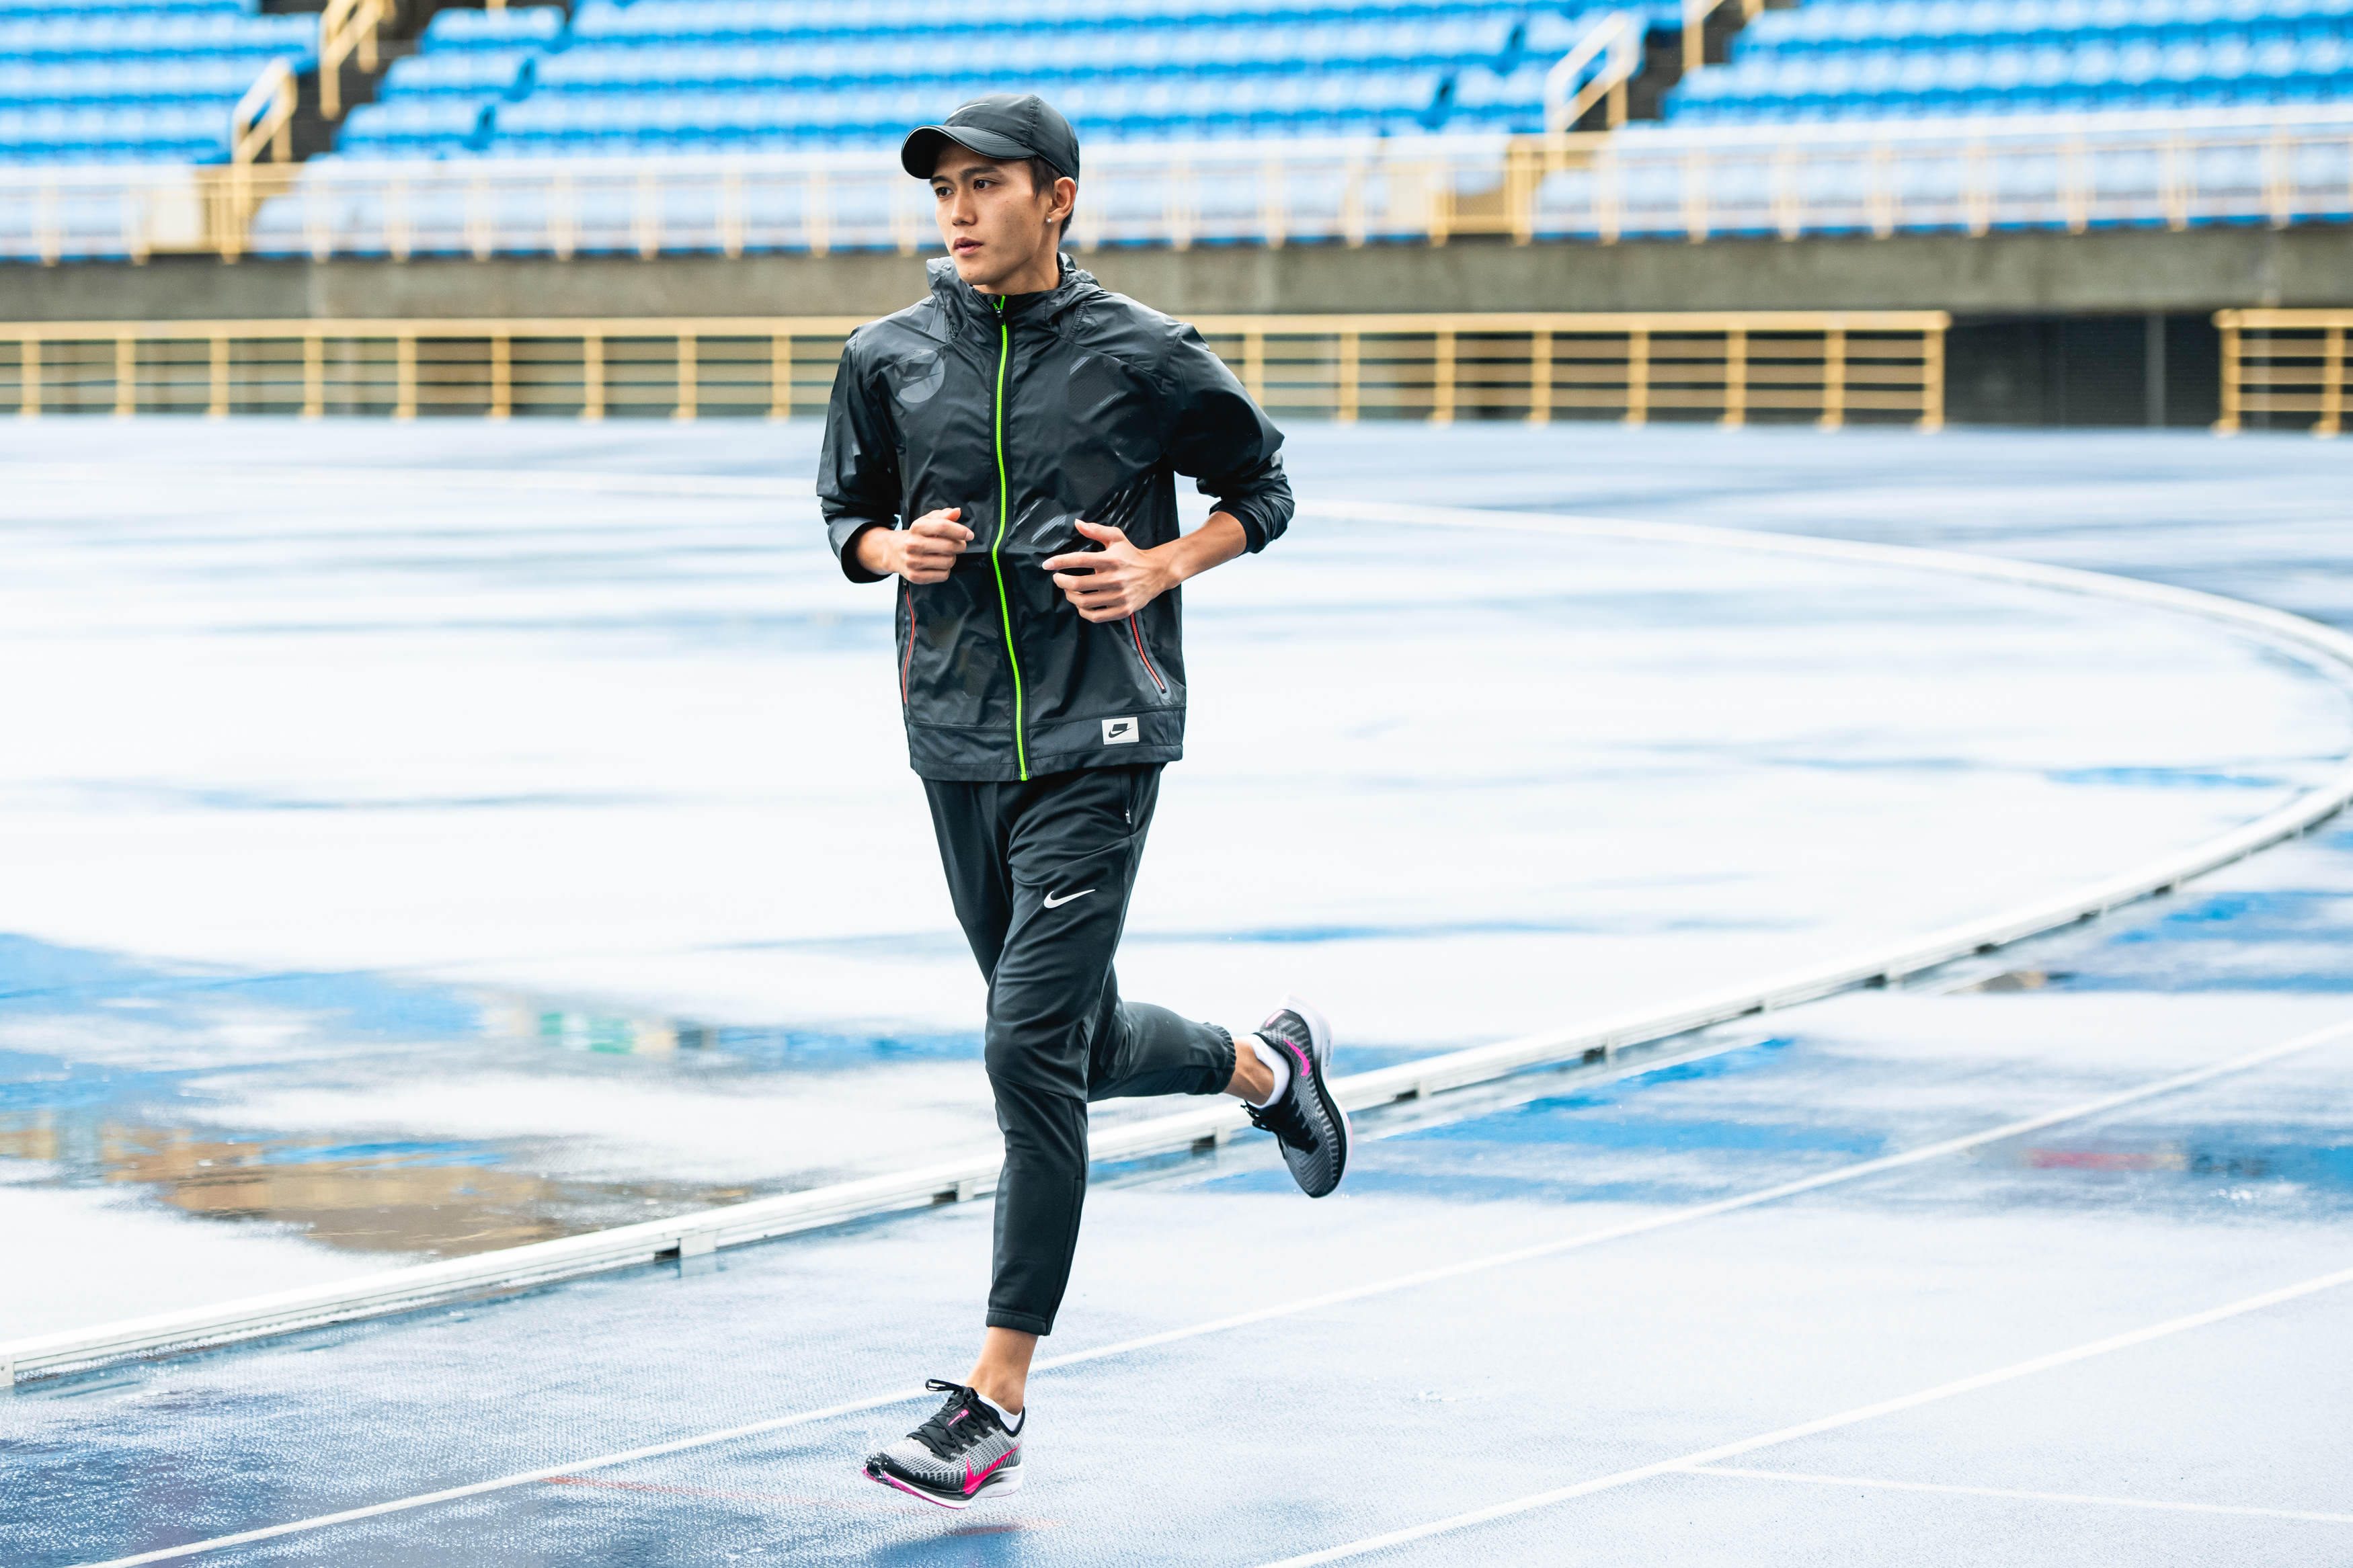 日本馬拉松紀錄保持人大迫傑二度訪臺 鼓勵跑者勇於突破－「猶豫 是對自己太客氣」